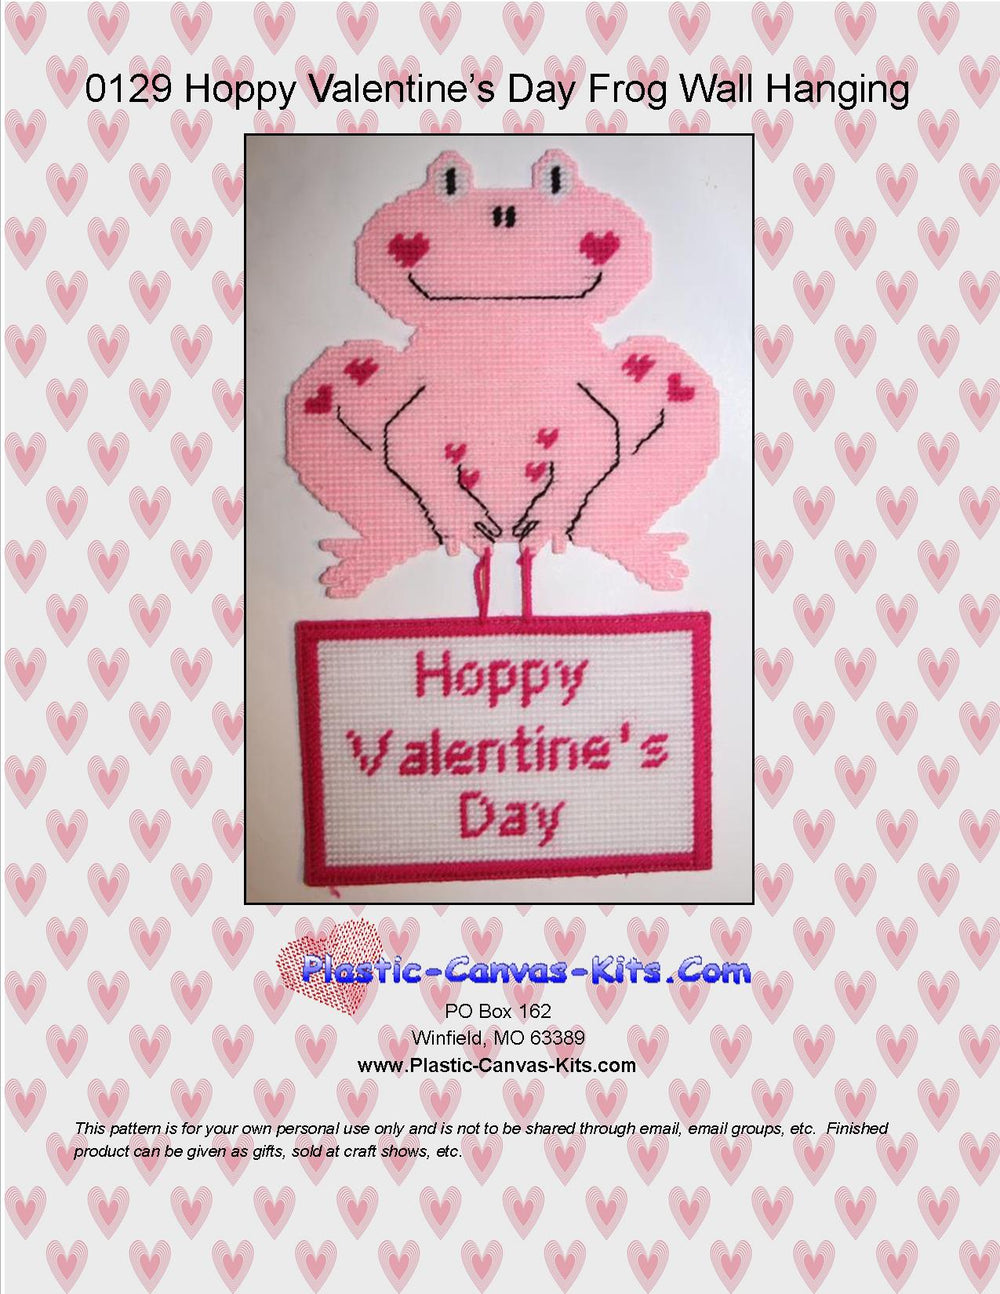 Hoppy Valentine's Day Frog